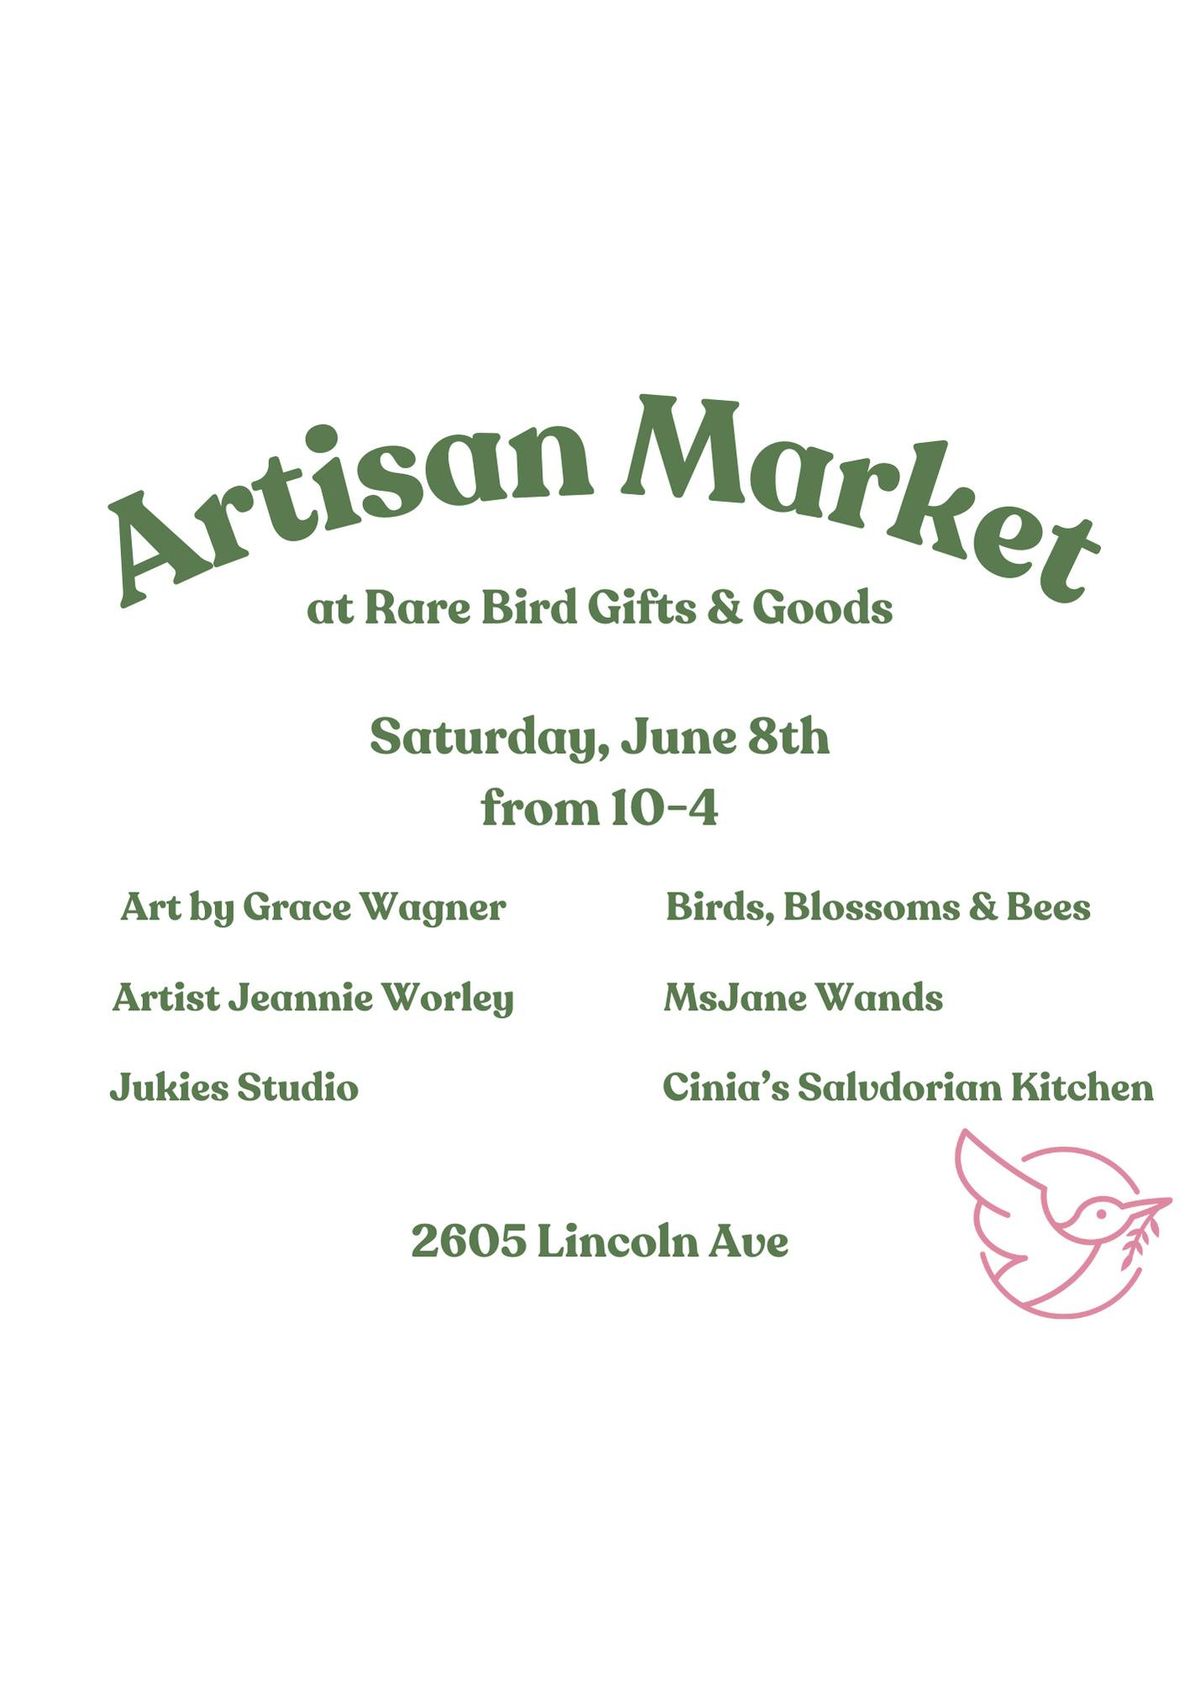 Artisan Market at Rare Bird Gifts & Goods